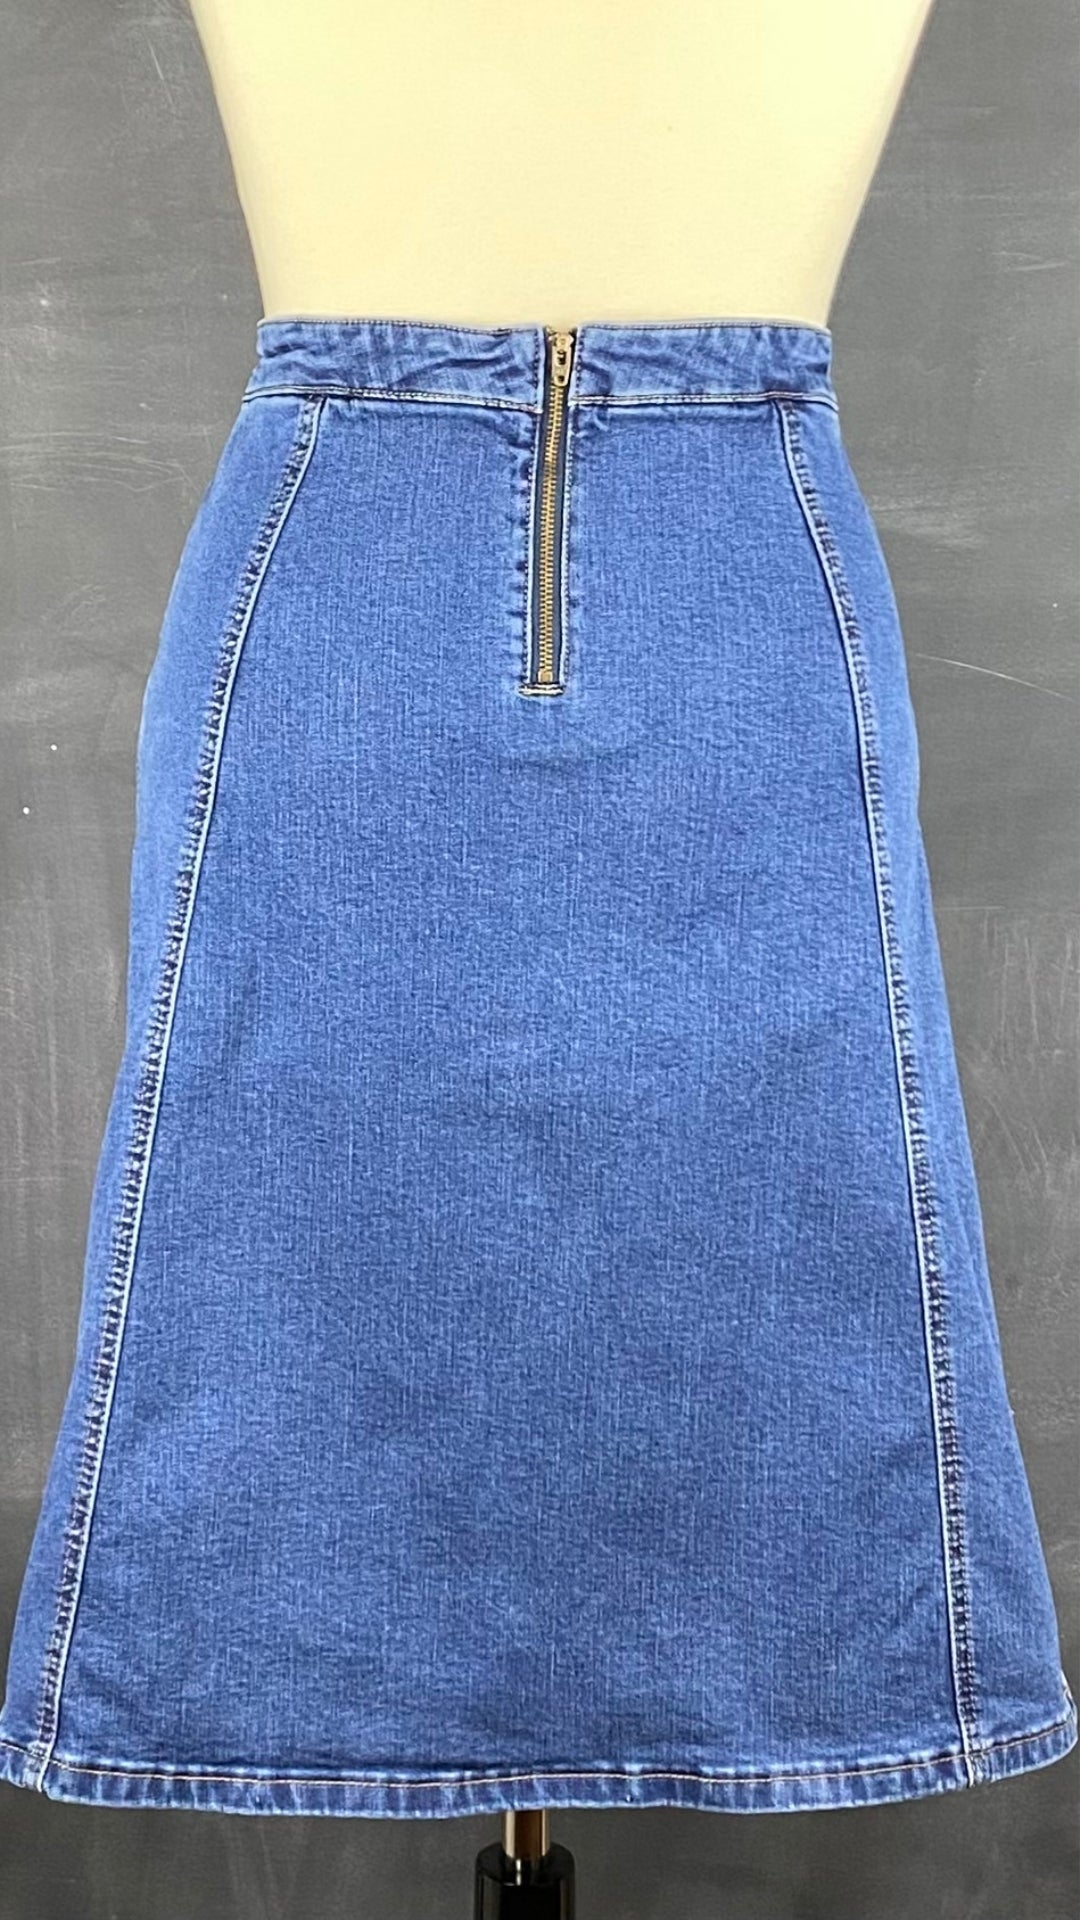 Jupe seconde main en jeans ligne A. Marque Icône par Simons, taille small. Vue de dos.